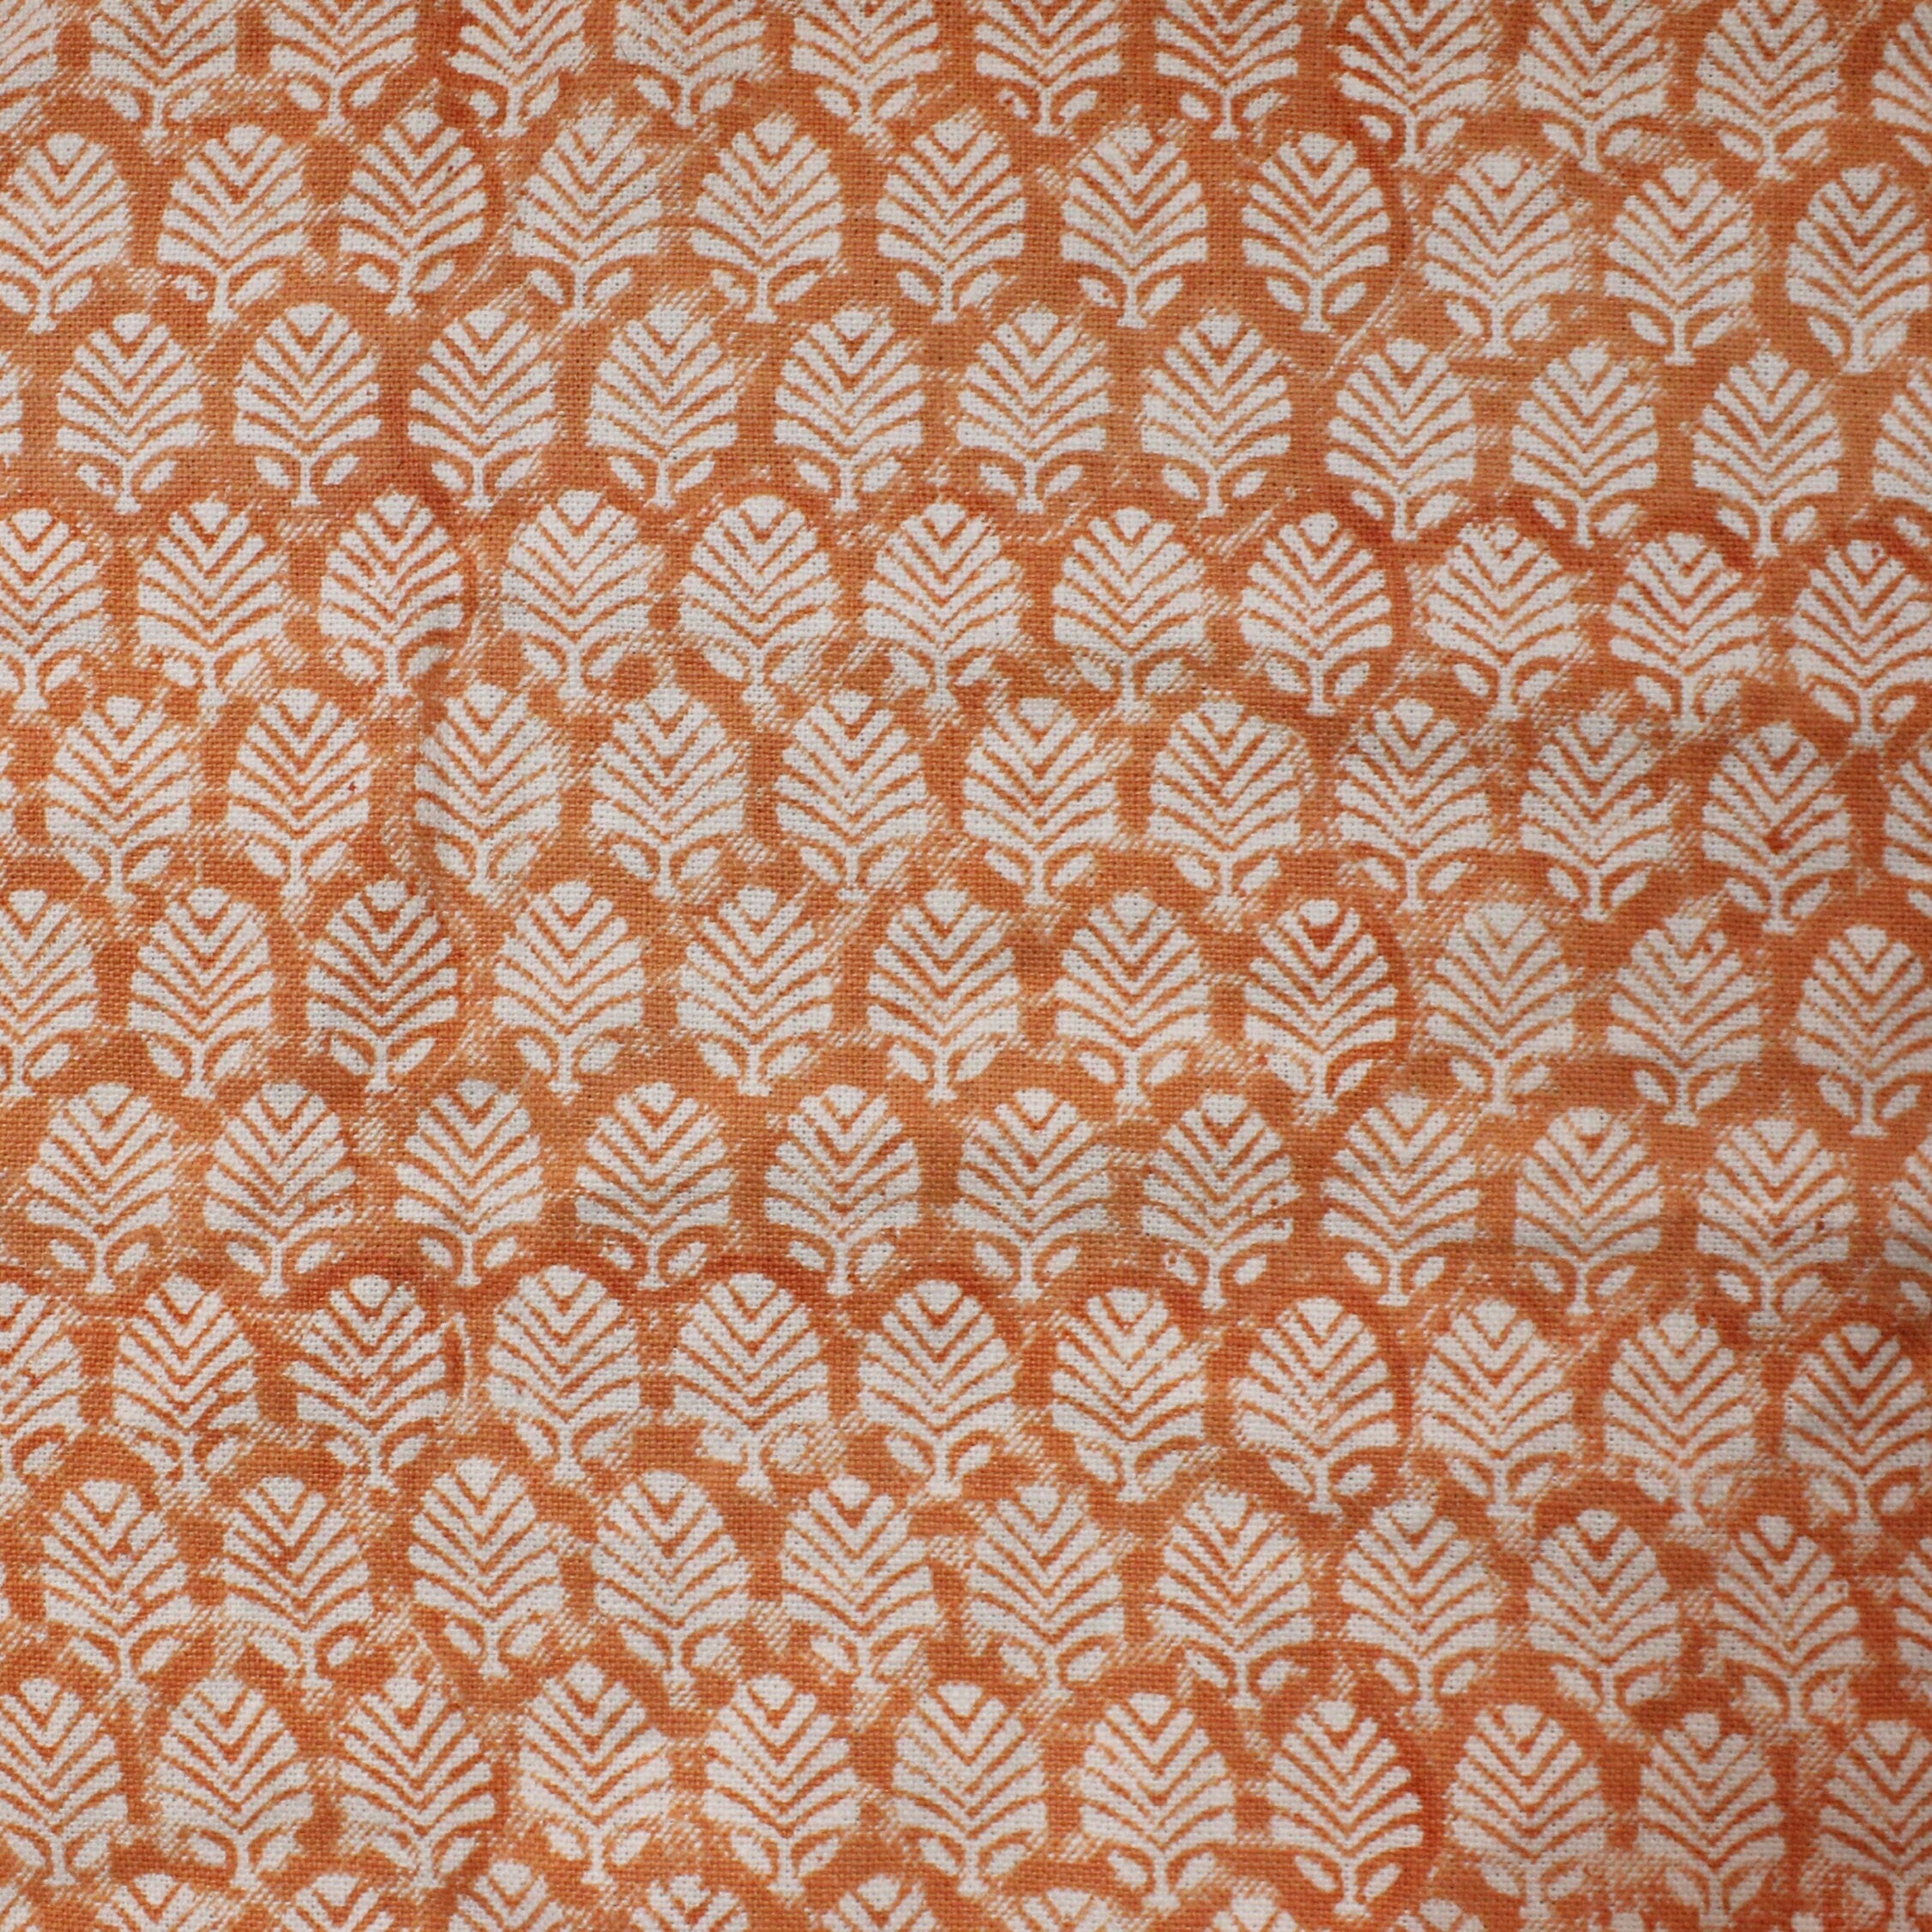 Block Print Linen Fabric, Sangmarmar  Indian Hand Block Print Fabric, Indian Linen Fabric, Block Print Fabric, Designer Floral Printing Fabric, Upholstery